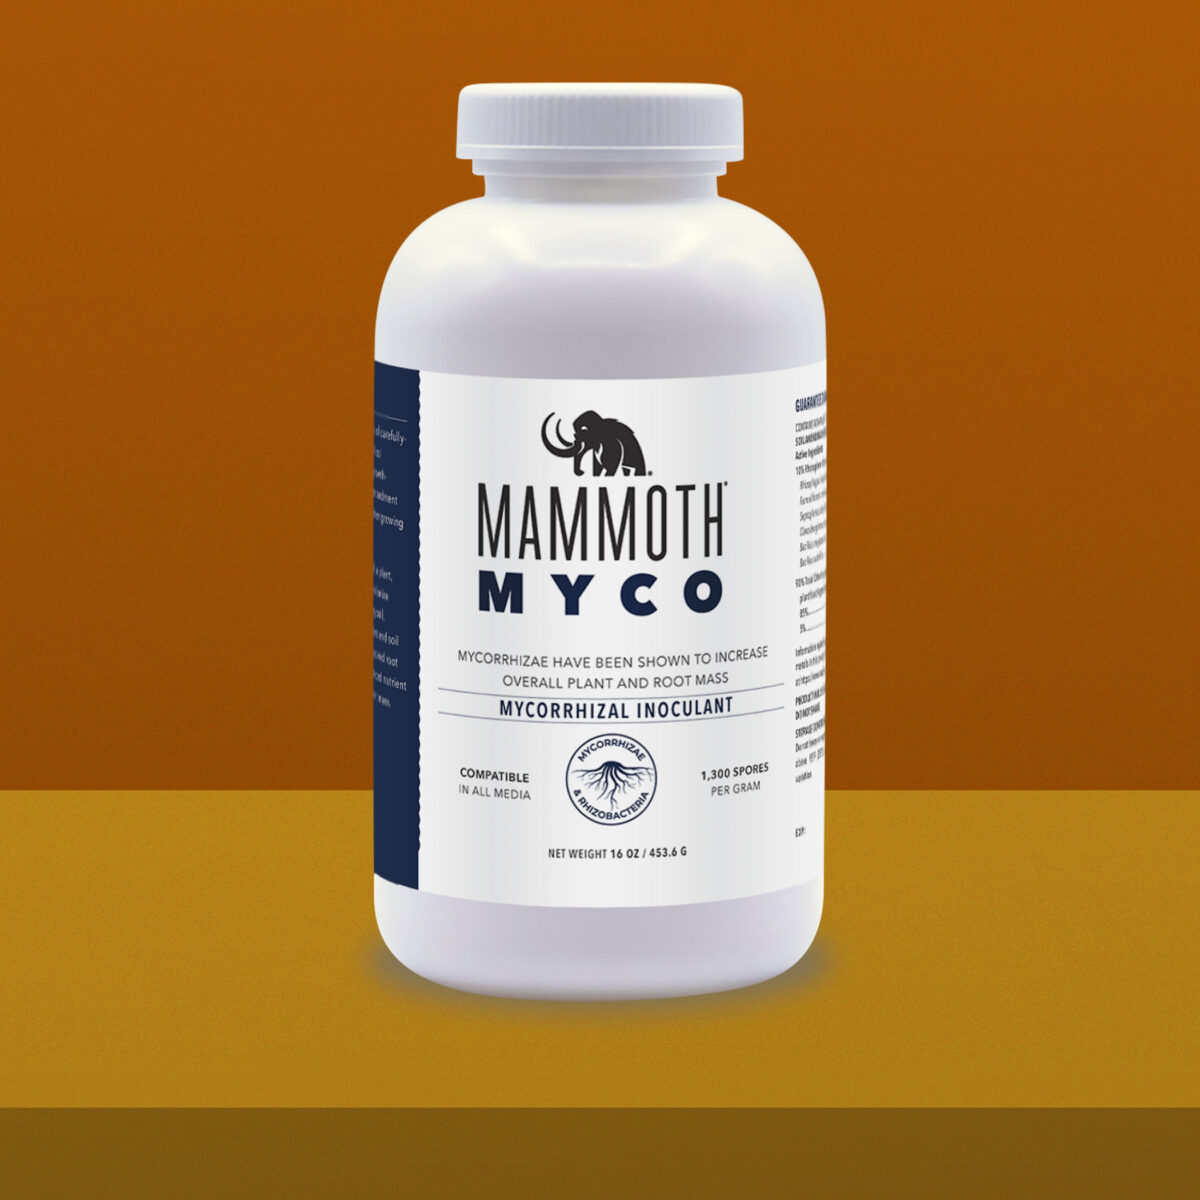 Mammoth Myco 16oz Product Image